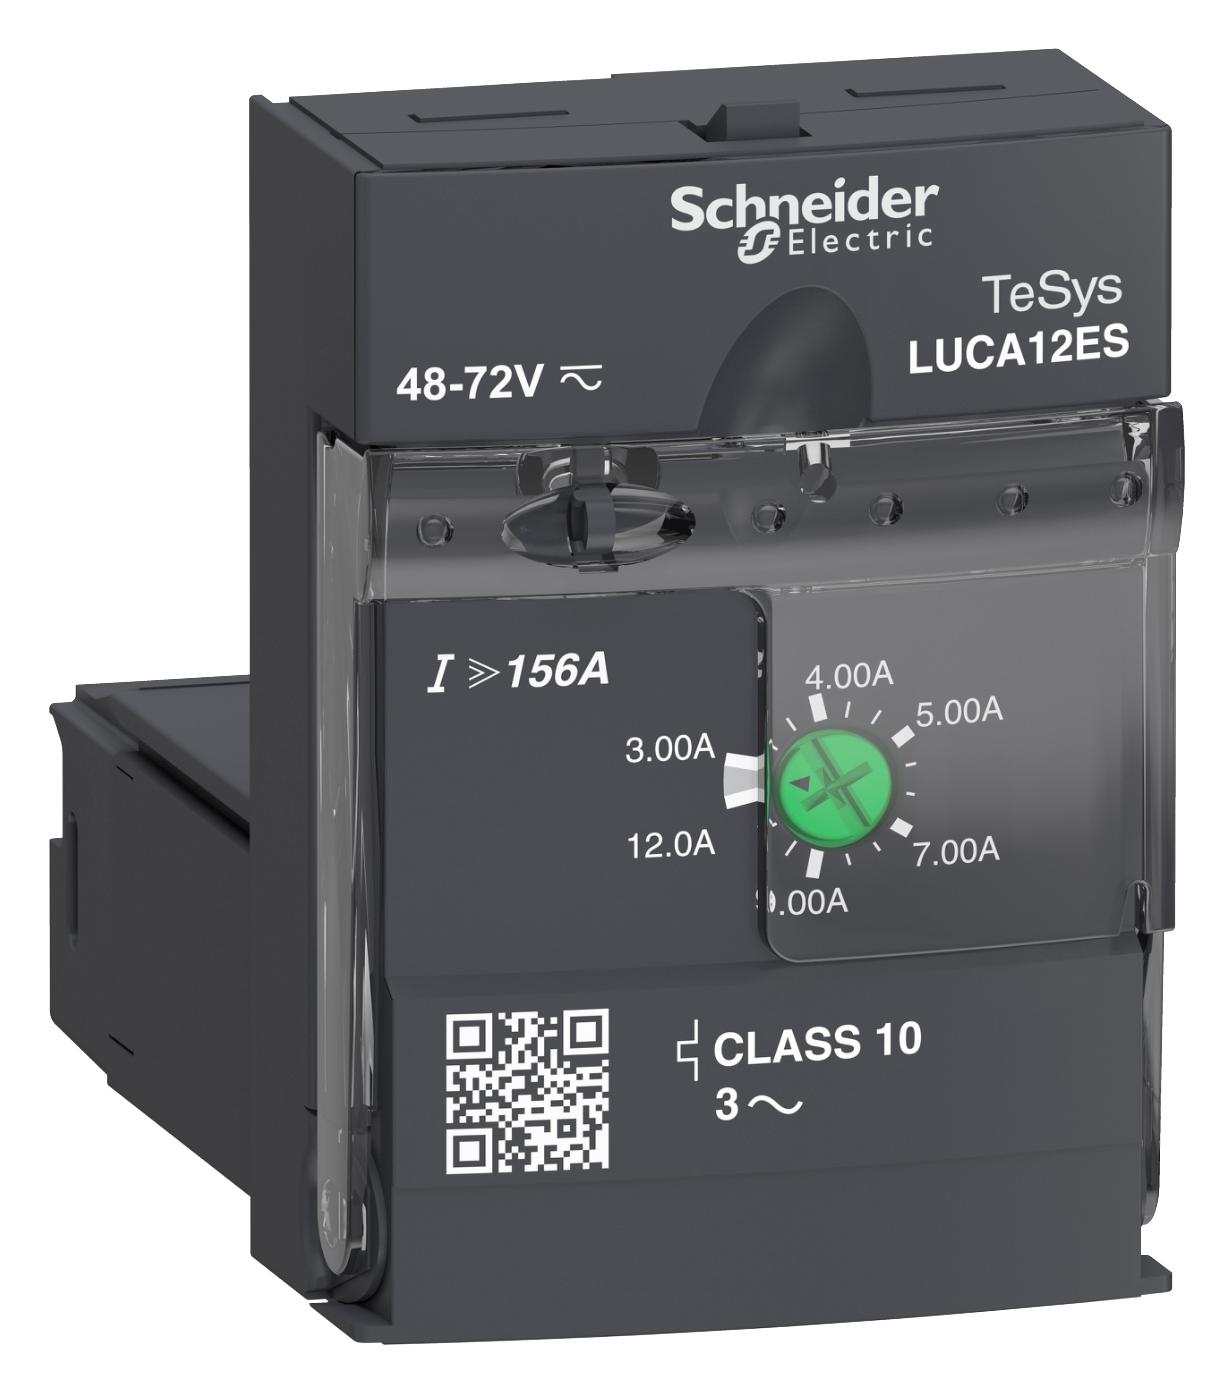 LUCA12ES UNIT 3-12A 48-72V SCHNEIDER ELECTRIC